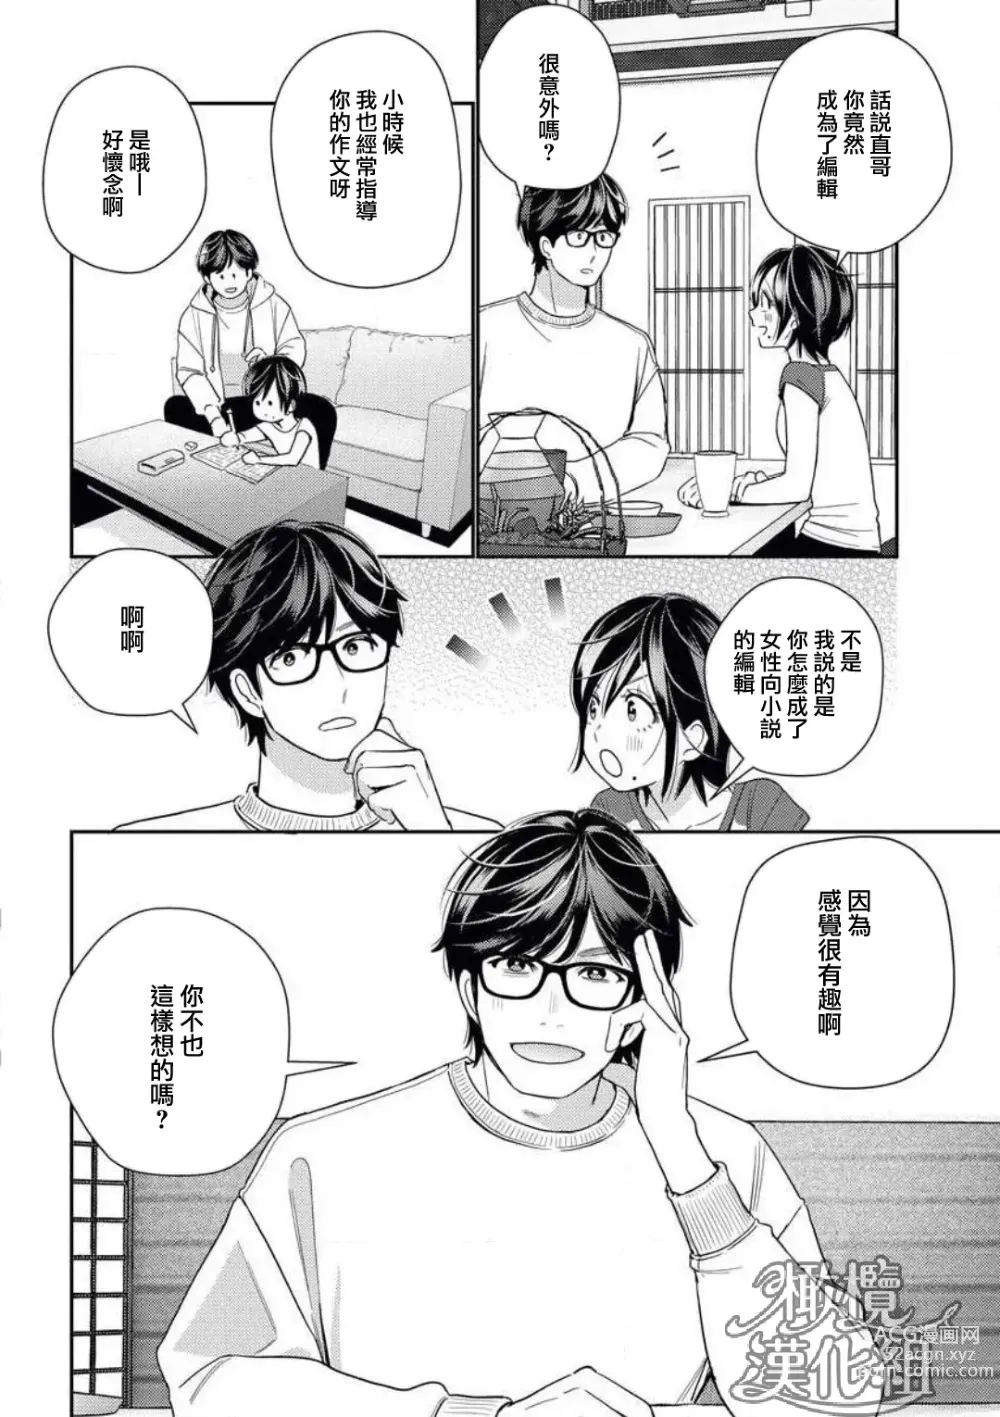 Page 10 of manga 青梅竹马难以攻陷被小黄话（※正当工作需求）玩弄一番